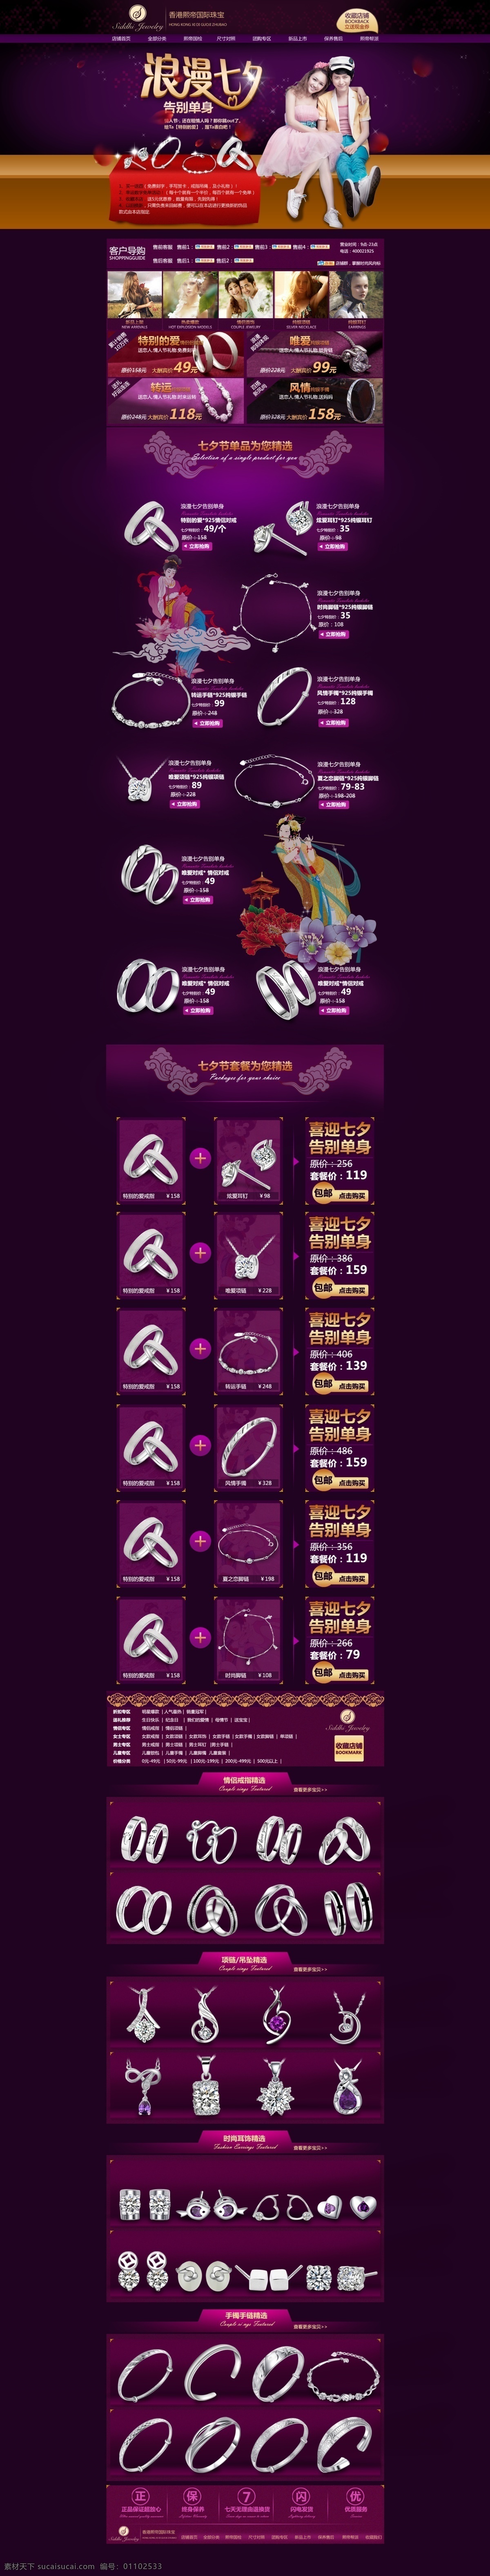 情人节 详情页 紫色 网页 礼品 wui 饰品 珠宝 web 界面设计 中文模板